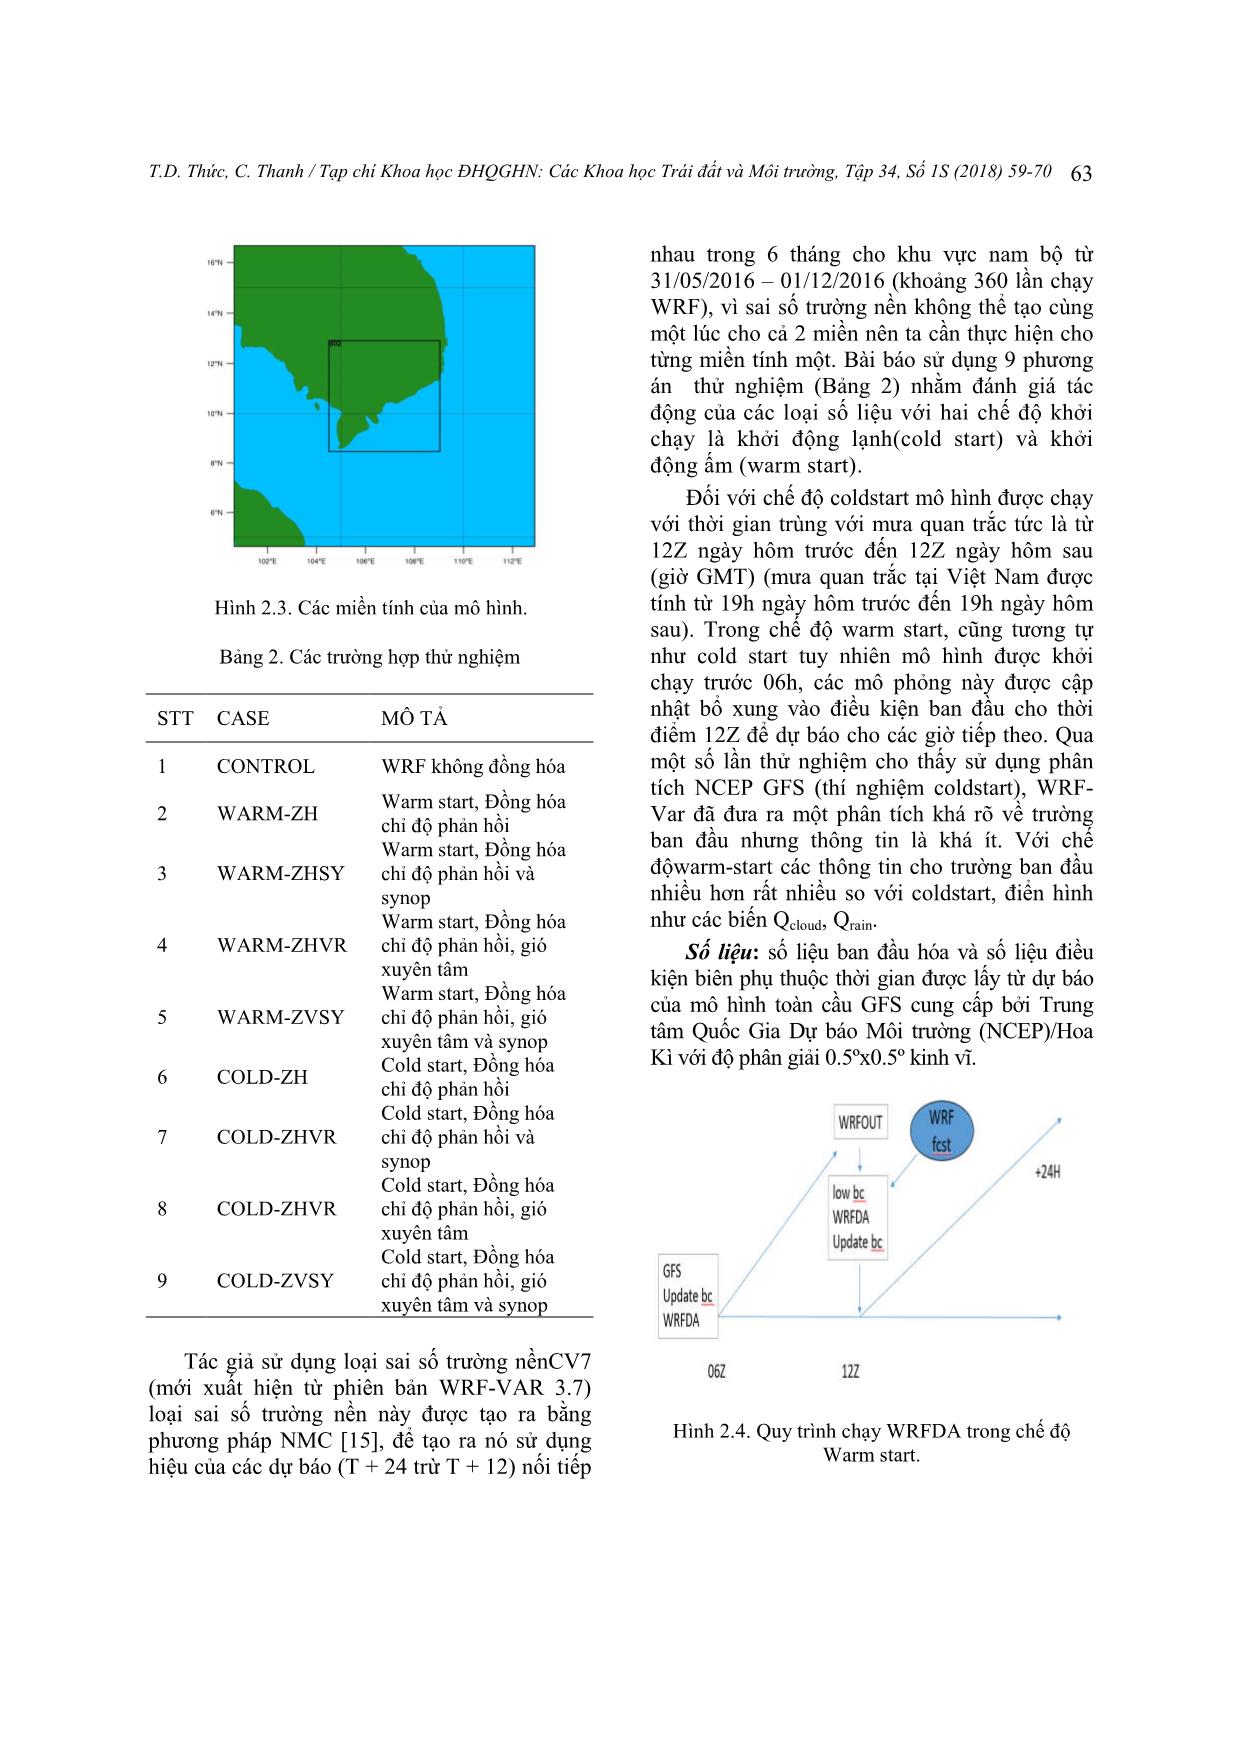 Thử nghiệm đồng hóa dữ liệu radar trong mô hình WRF để dự báo mưa lớn cho khu vực Thành phố Hồ Chí Minh trang 5